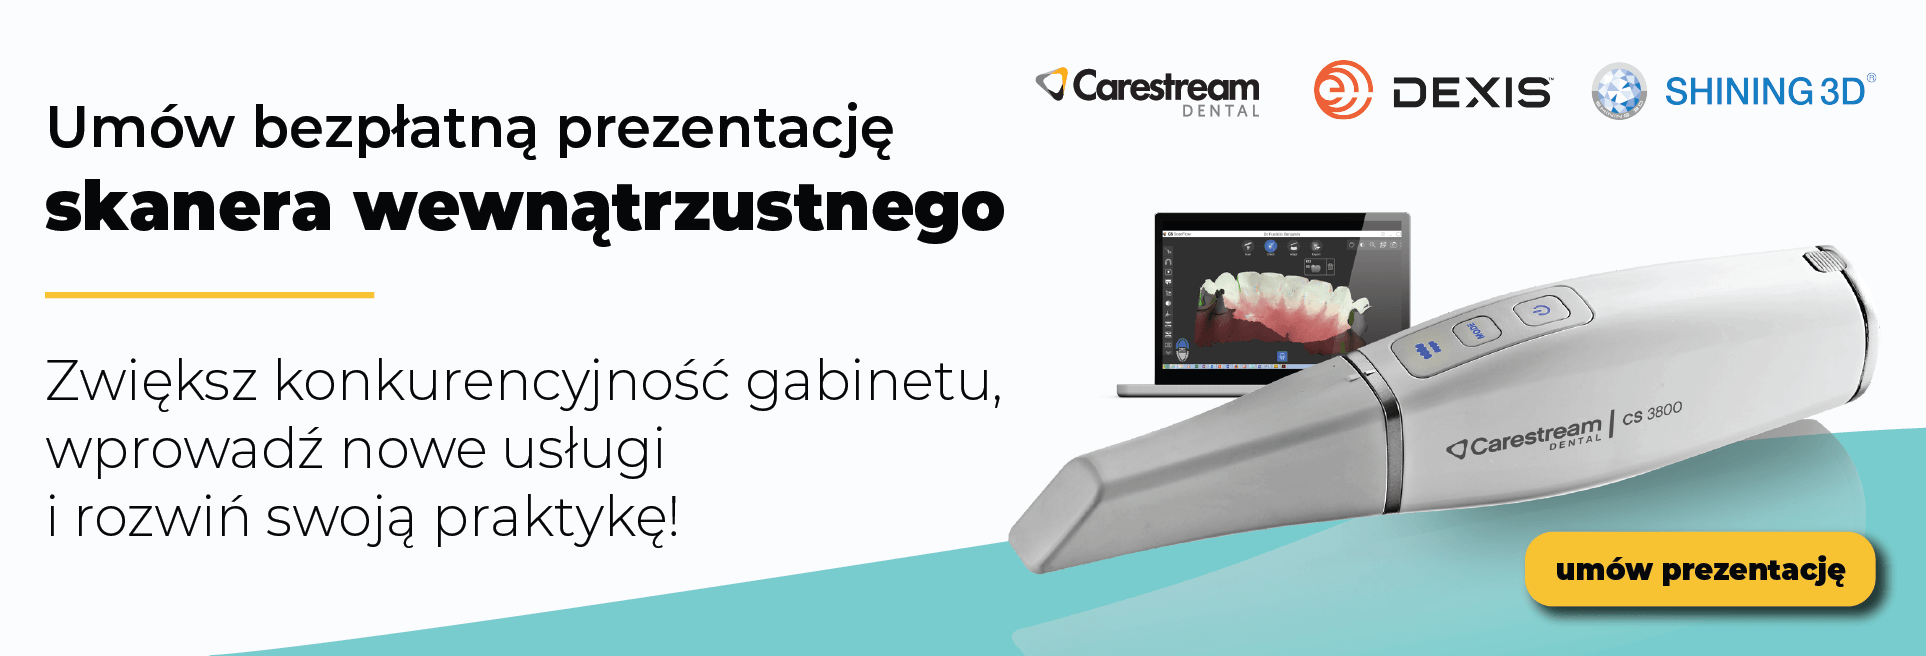 Umów bezpłatną prezentację skanerów Carestream i Shining 3D